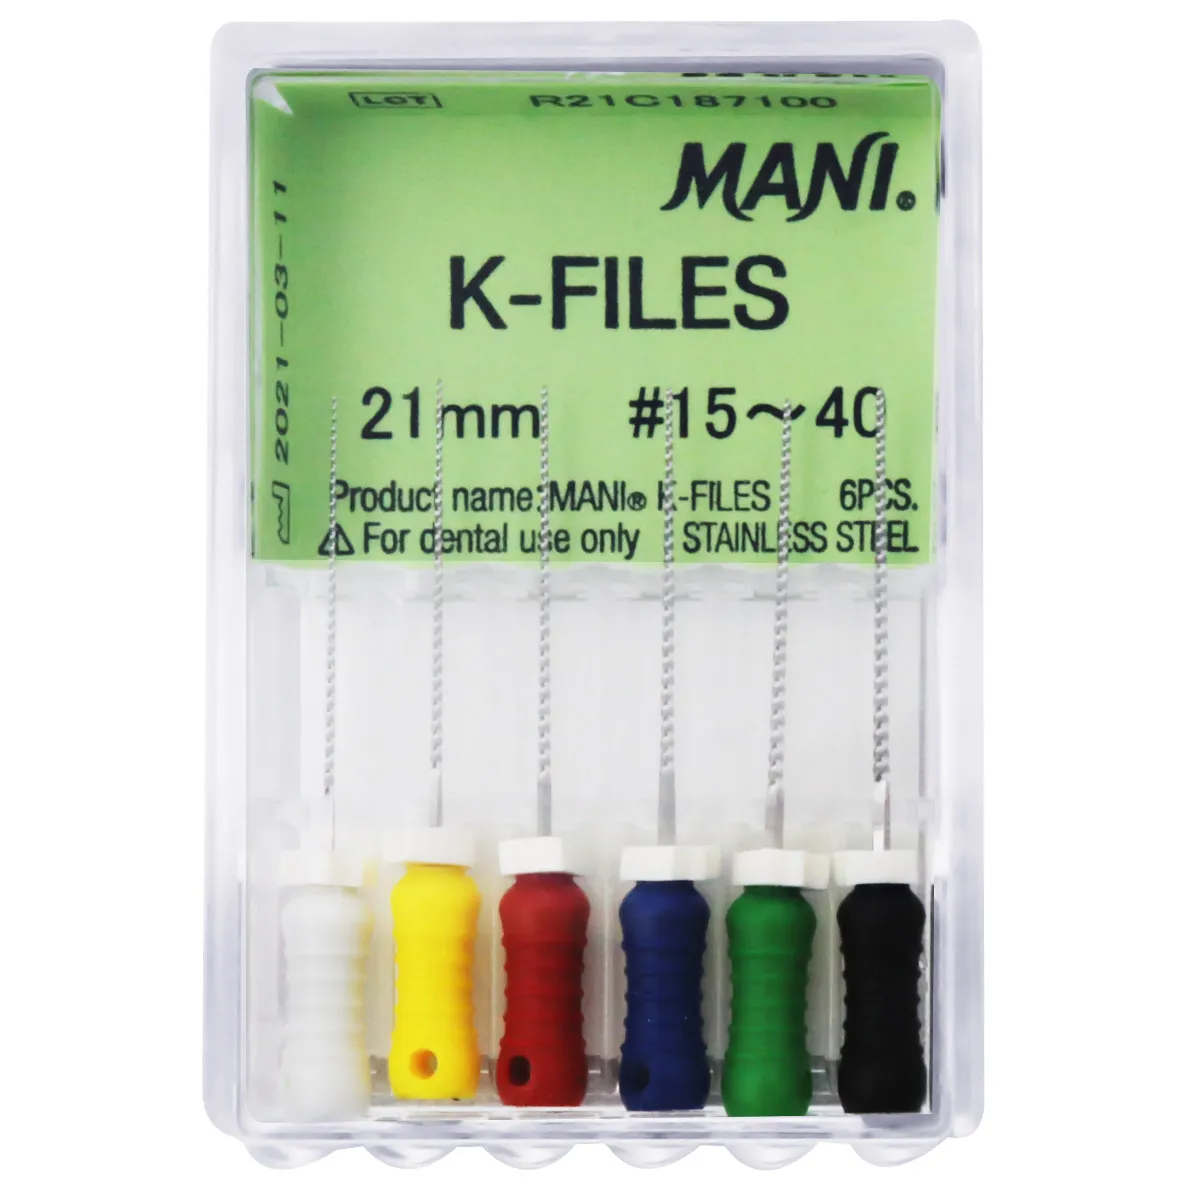 Mani K-Files 21mm - Dentalstall India